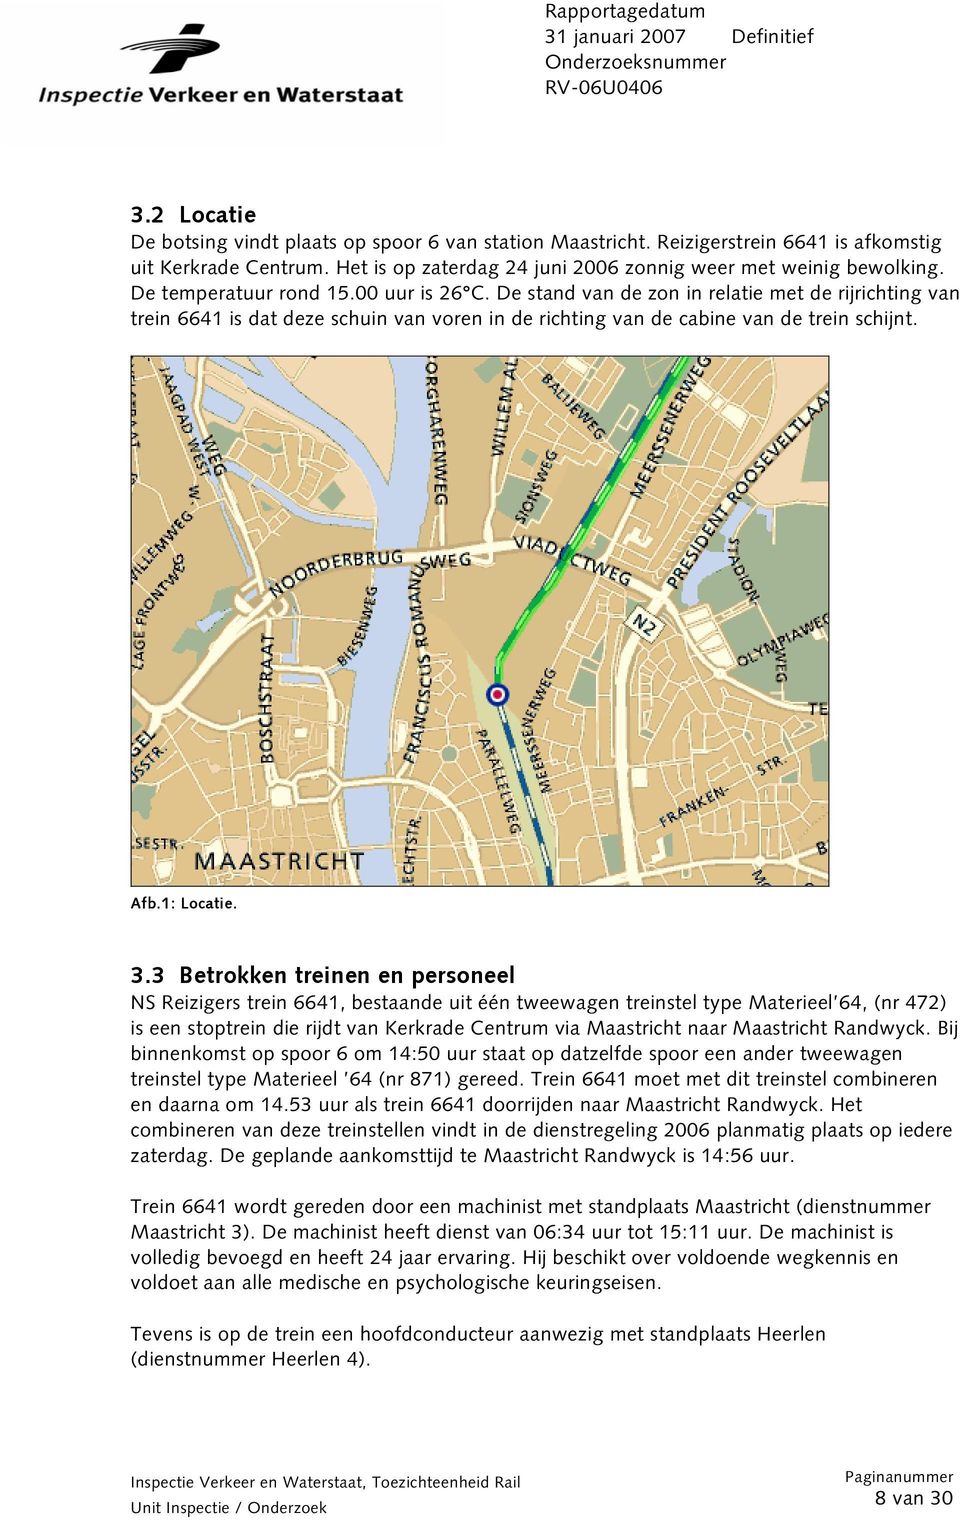 3.3 Betrokken treinen en personeel NS Reizigers trein 6641, bestaande uit één tweewagen treinstel type Materieel 64, (nr 472) is een stoptrein die rijdt van Kerkrade Centrum via Maastricht naar